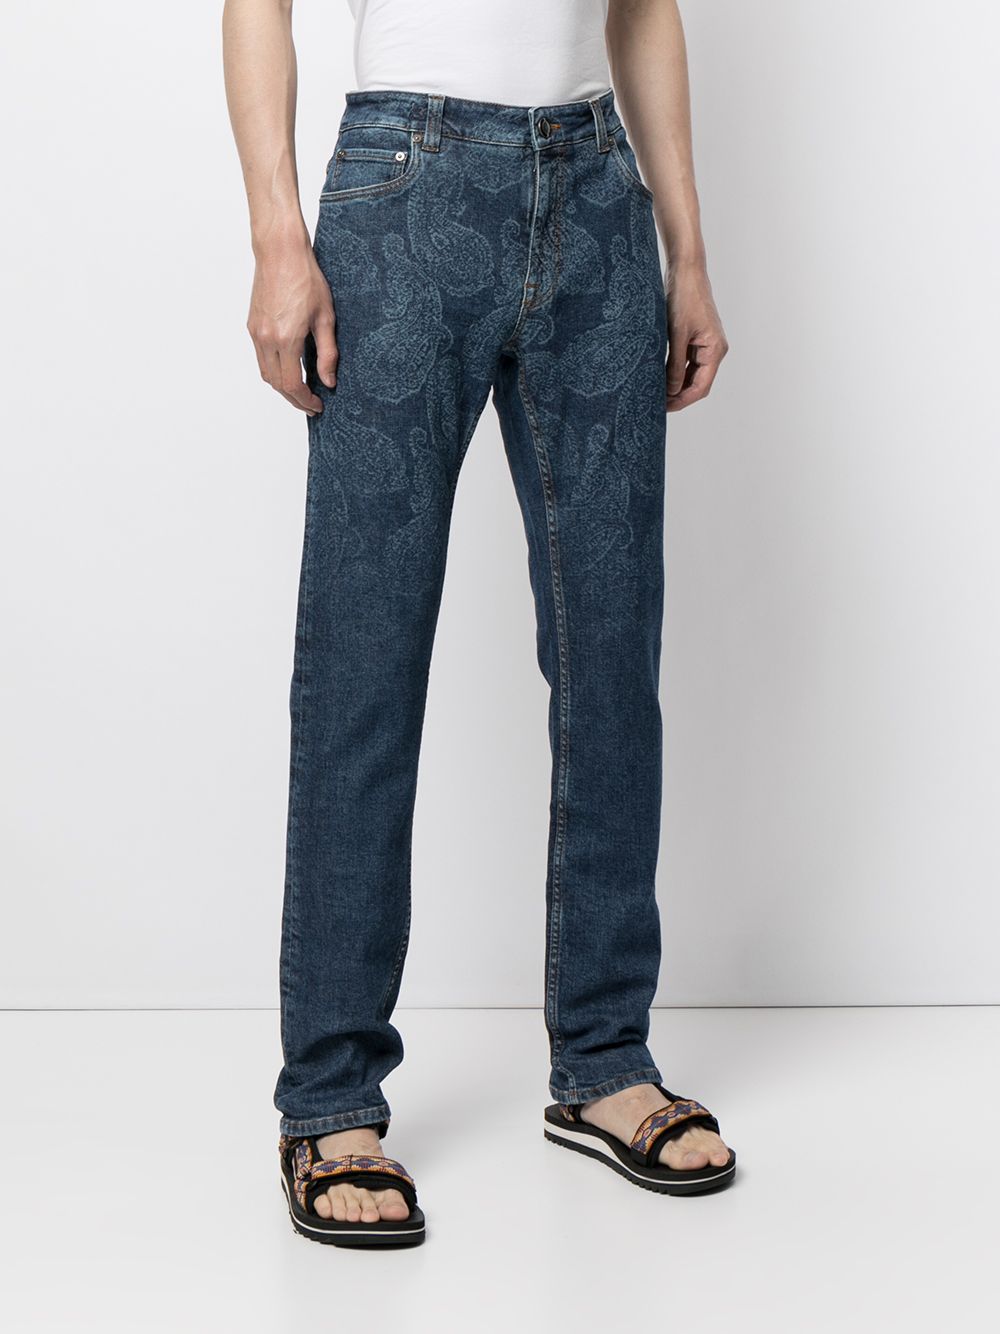 фото Etro джинсы с узором пейсли